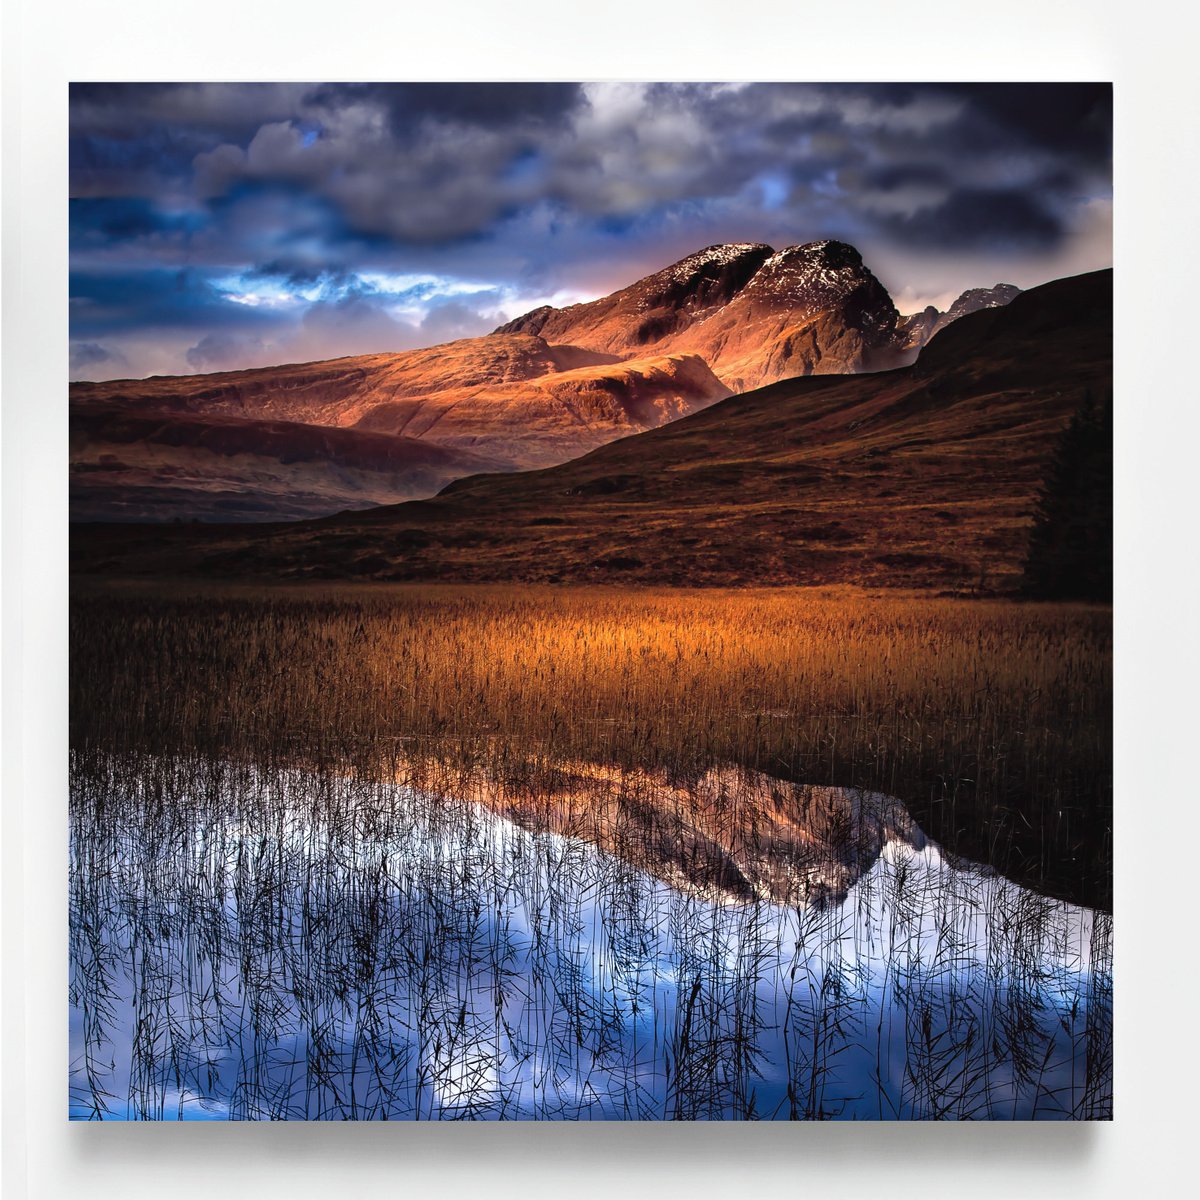 Cuillins Winter Blue, Isle of Skye by Lynne Douglas